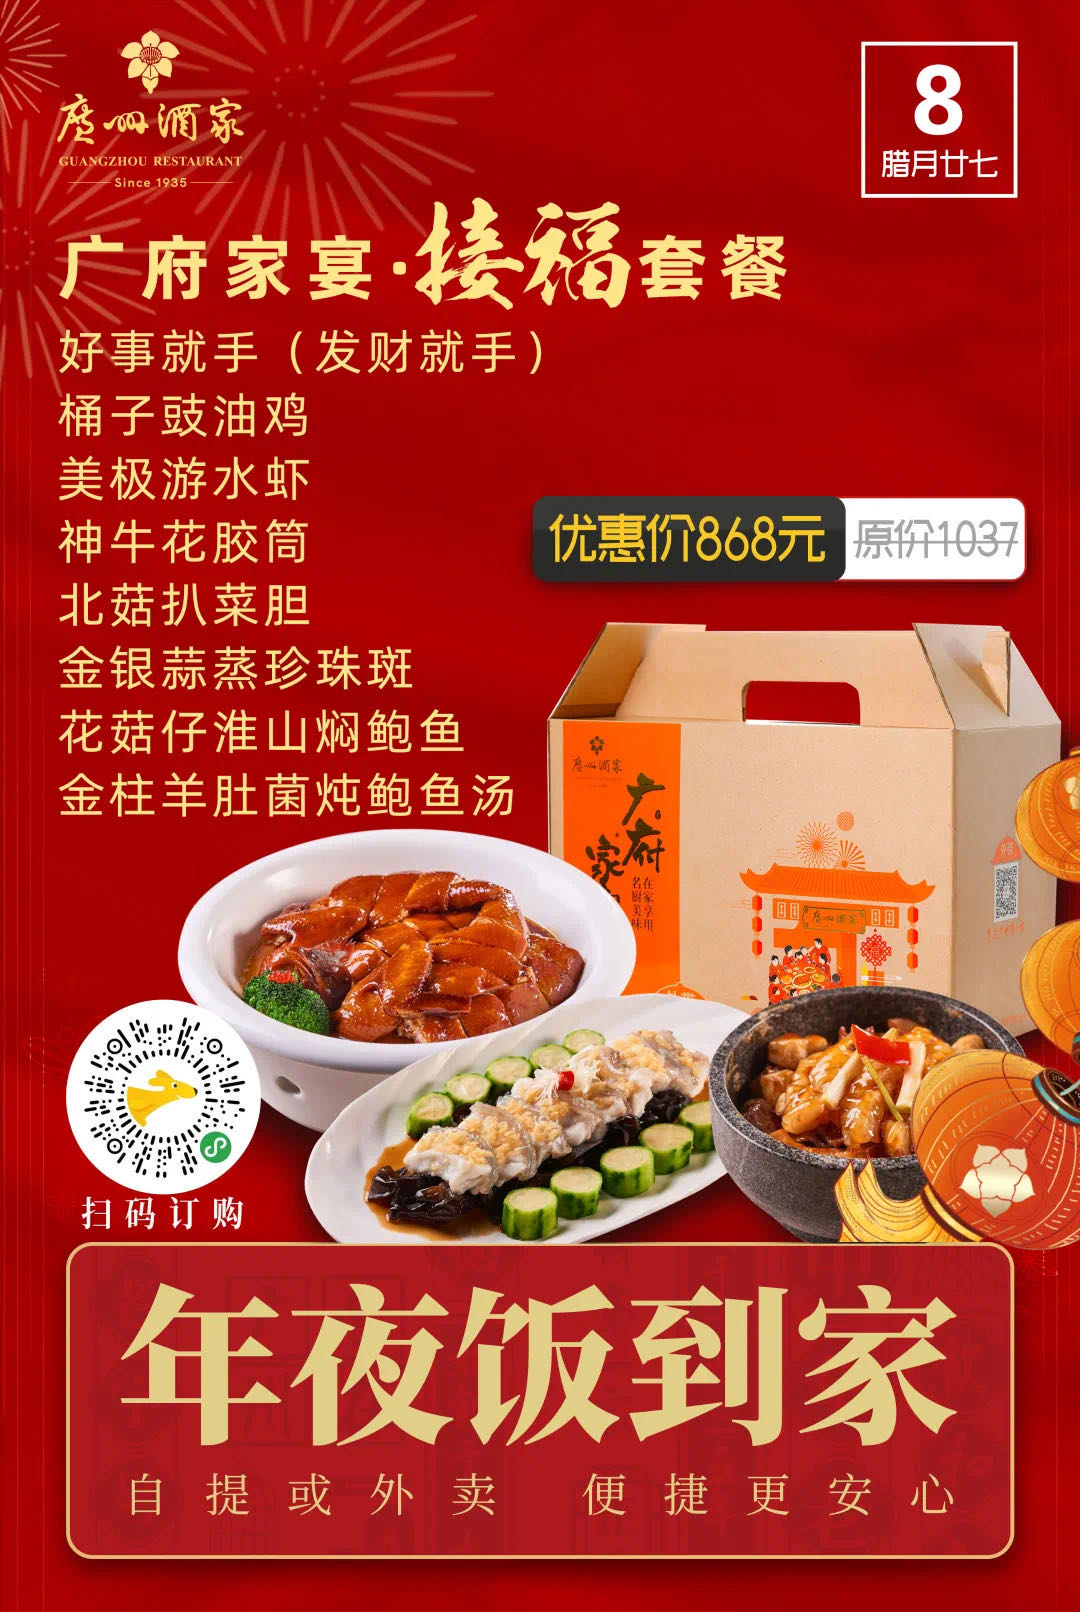 广州酒家集团倾力打造“年味大餐” 实现新春业绩“开门红”